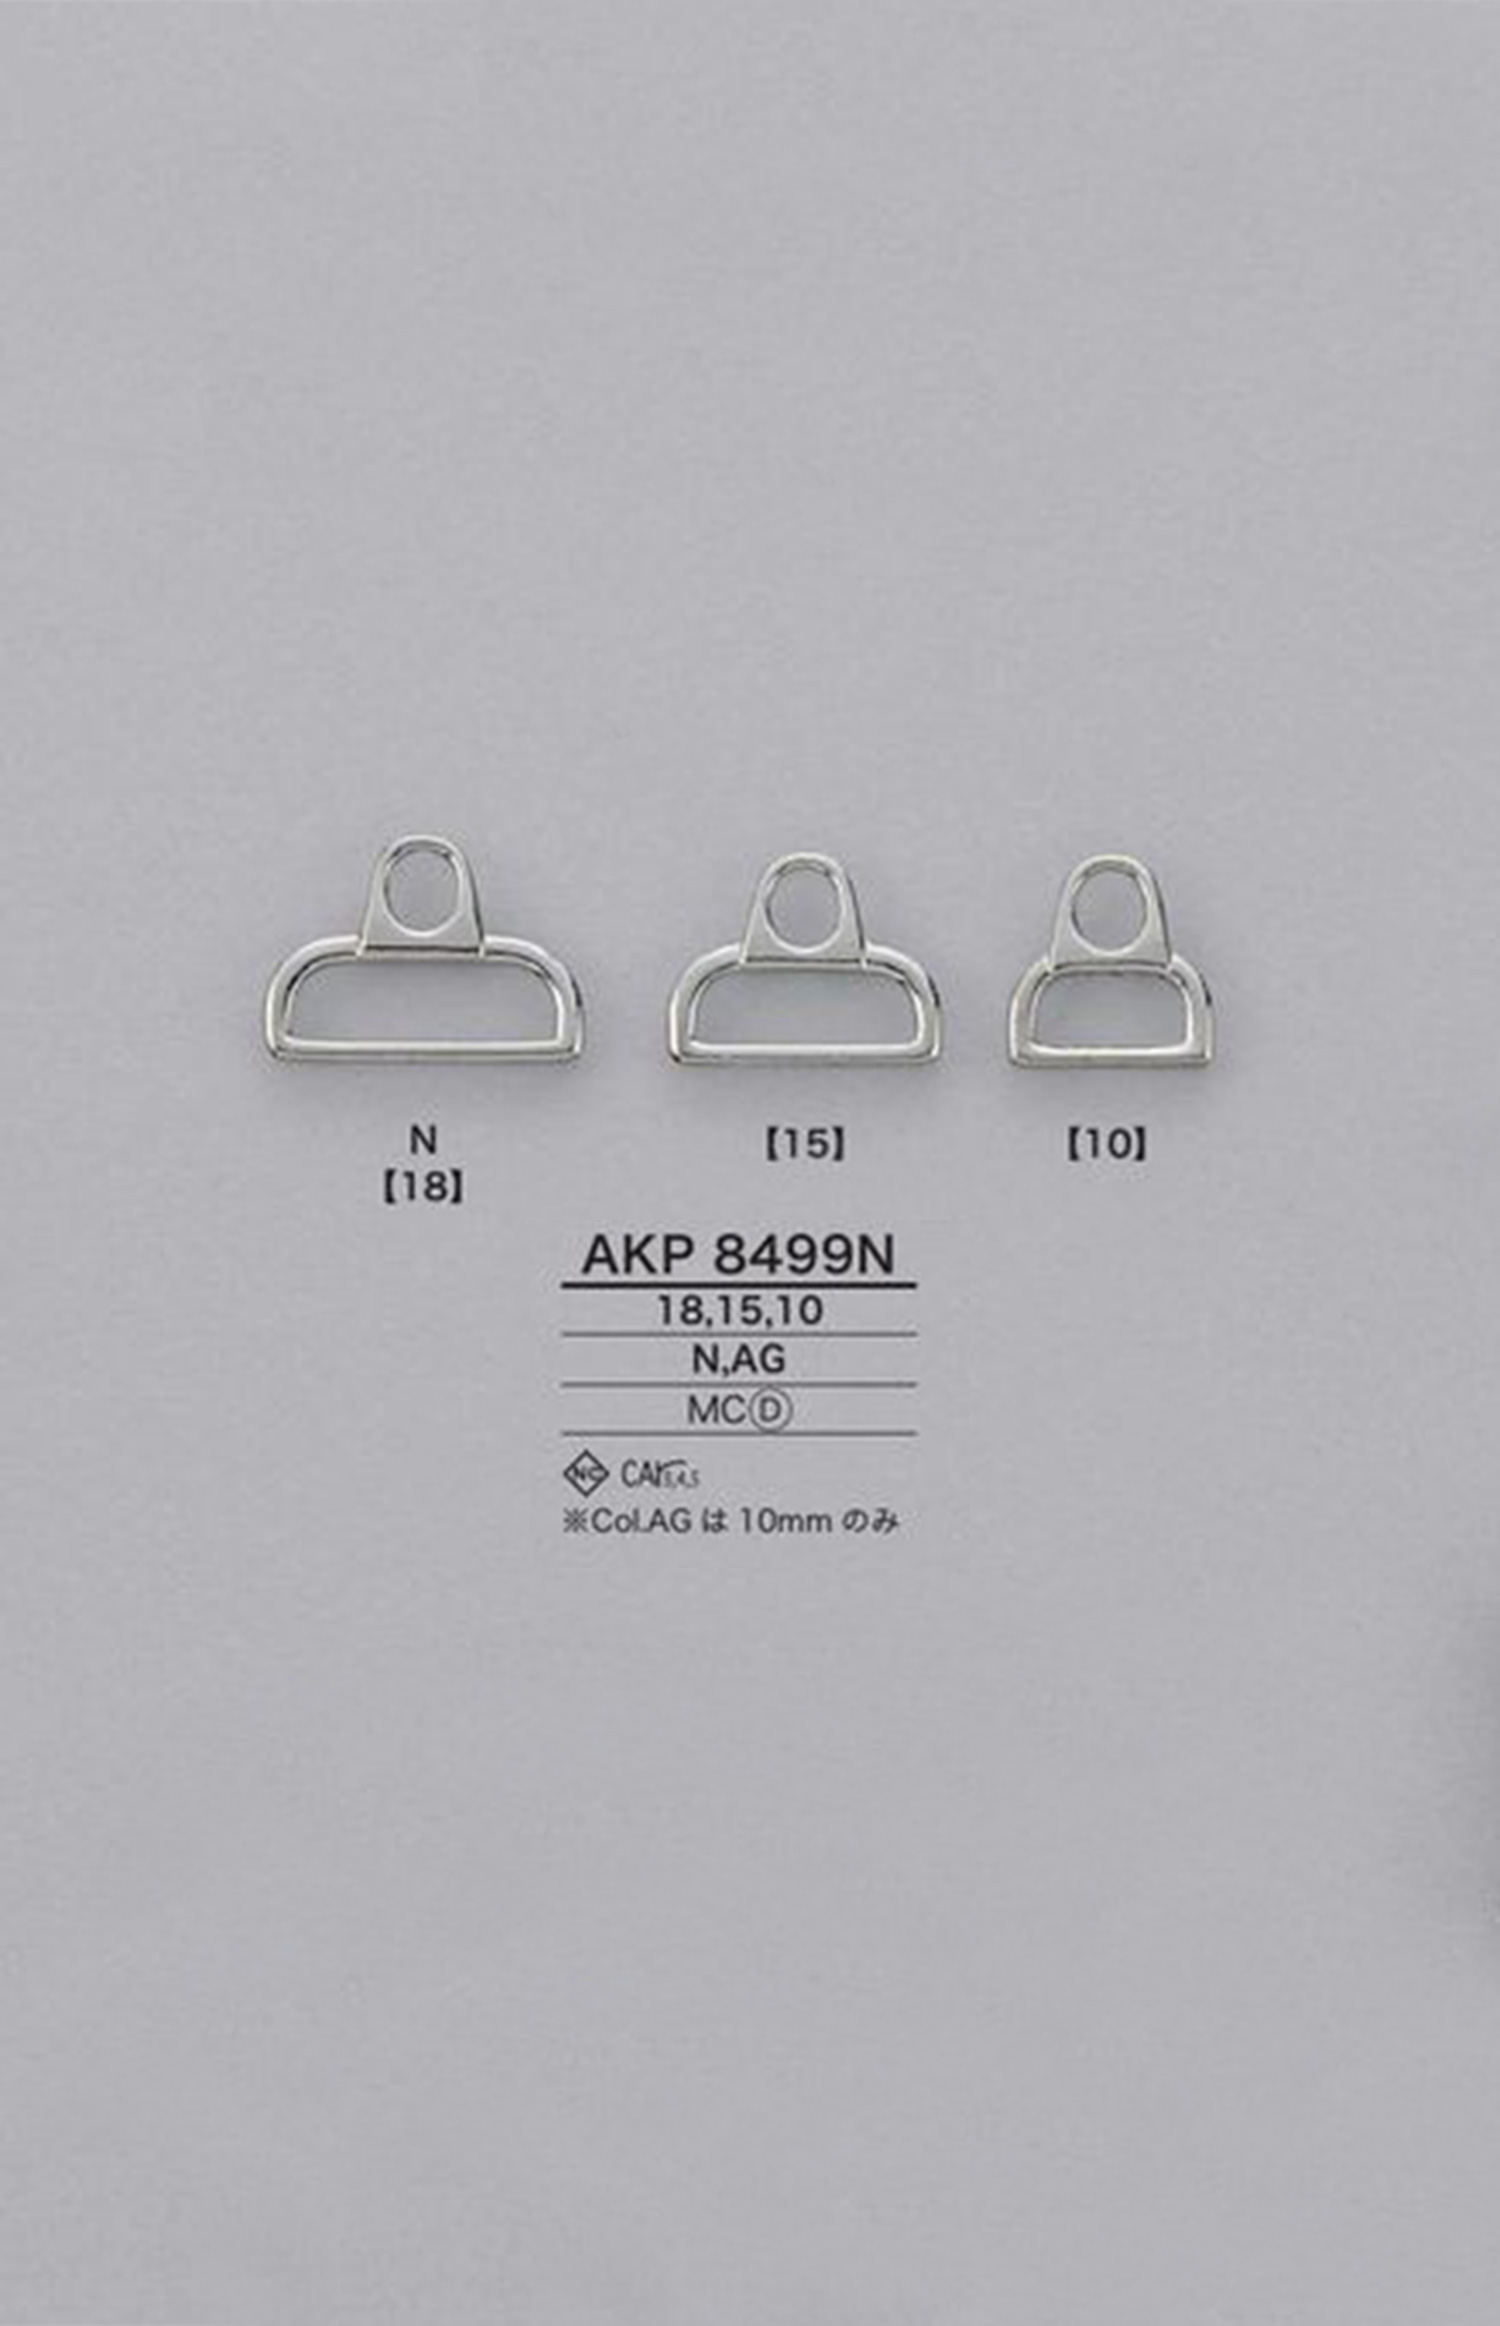 AKP8499N 压力铸造拉链点（拉头） 爱丽丝纽扣